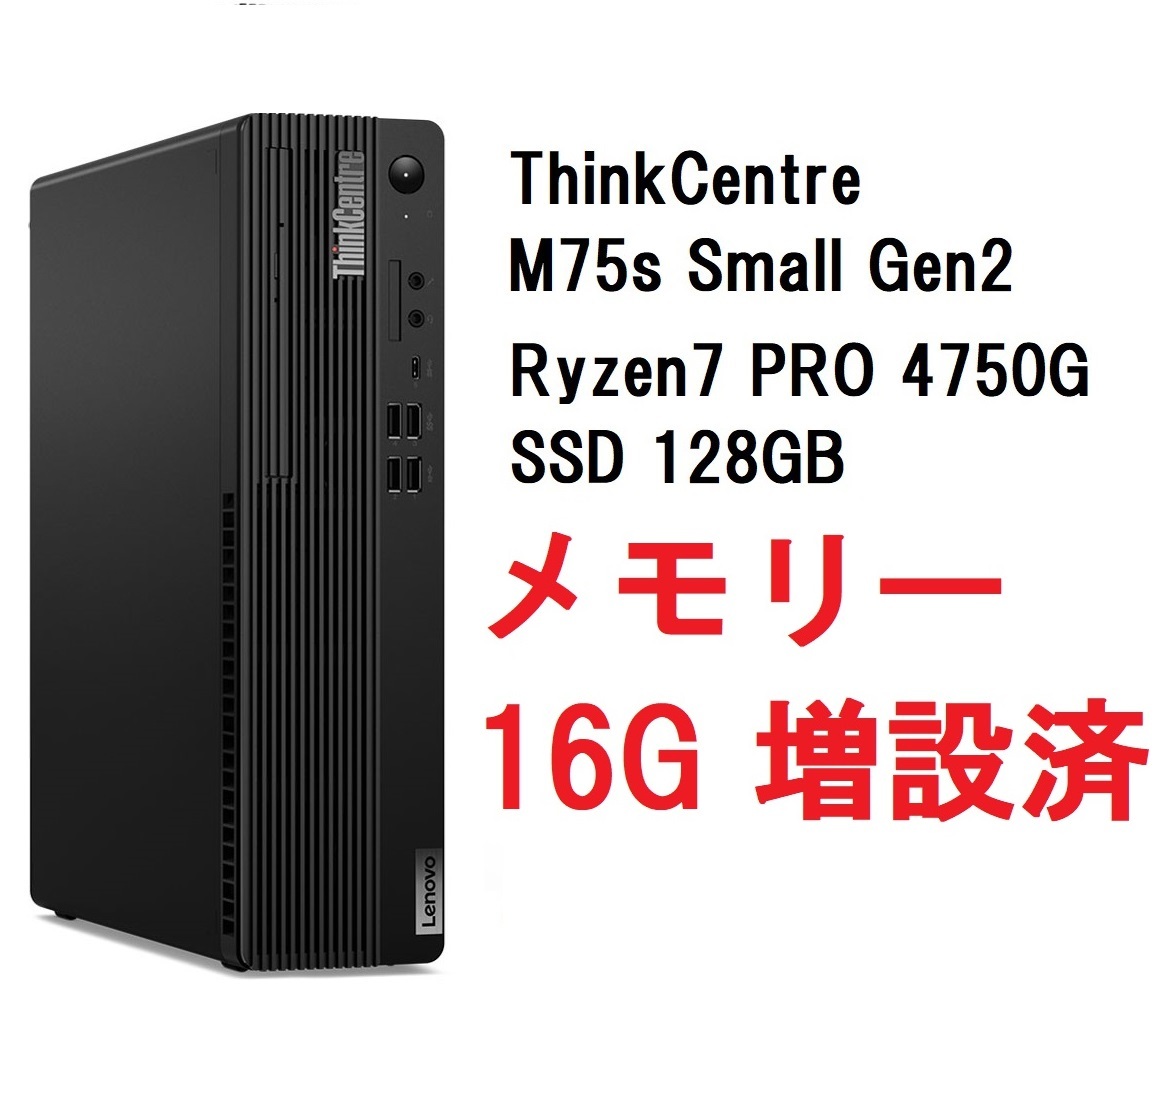 【未使用品】 即納 Lenovo SSD 4750G/メモリ16GB/128GB PRO 7 Ryzen Gen2 Small M75s ThinkCentre パソコン単体